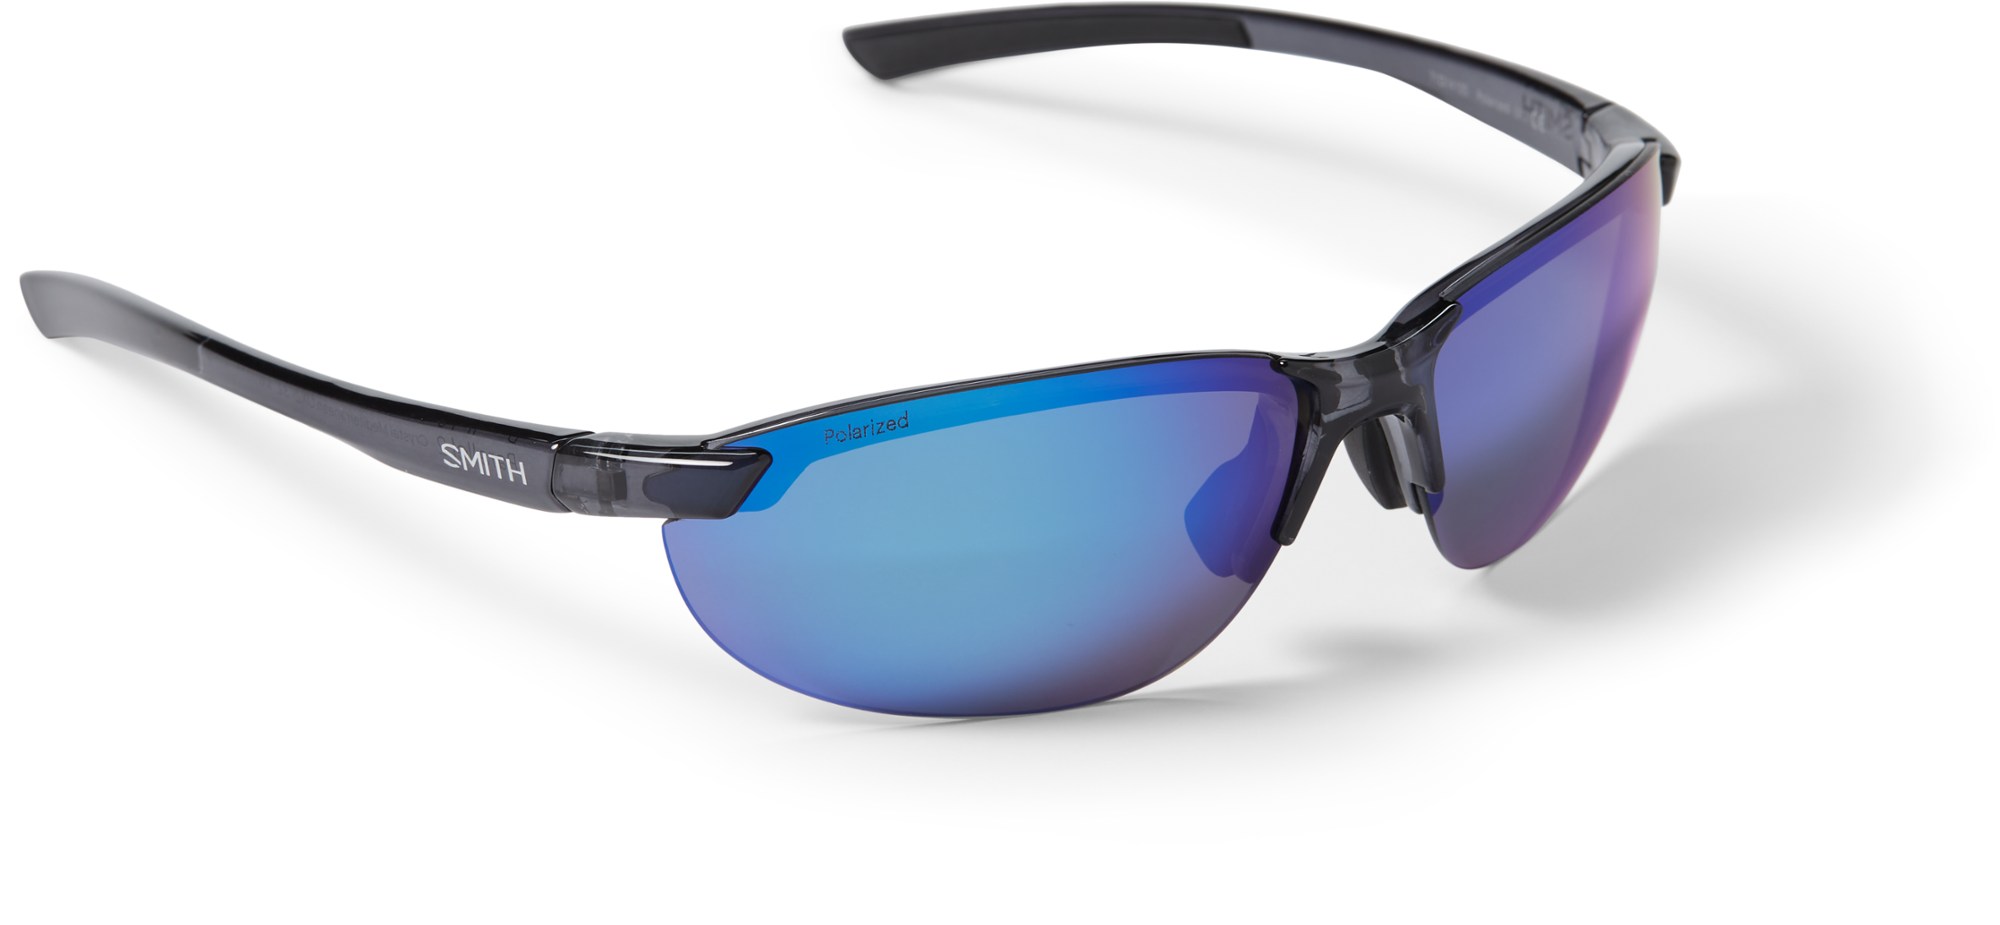 Поляризованные солнцезащитные очки Parallel 2 Smith, синий